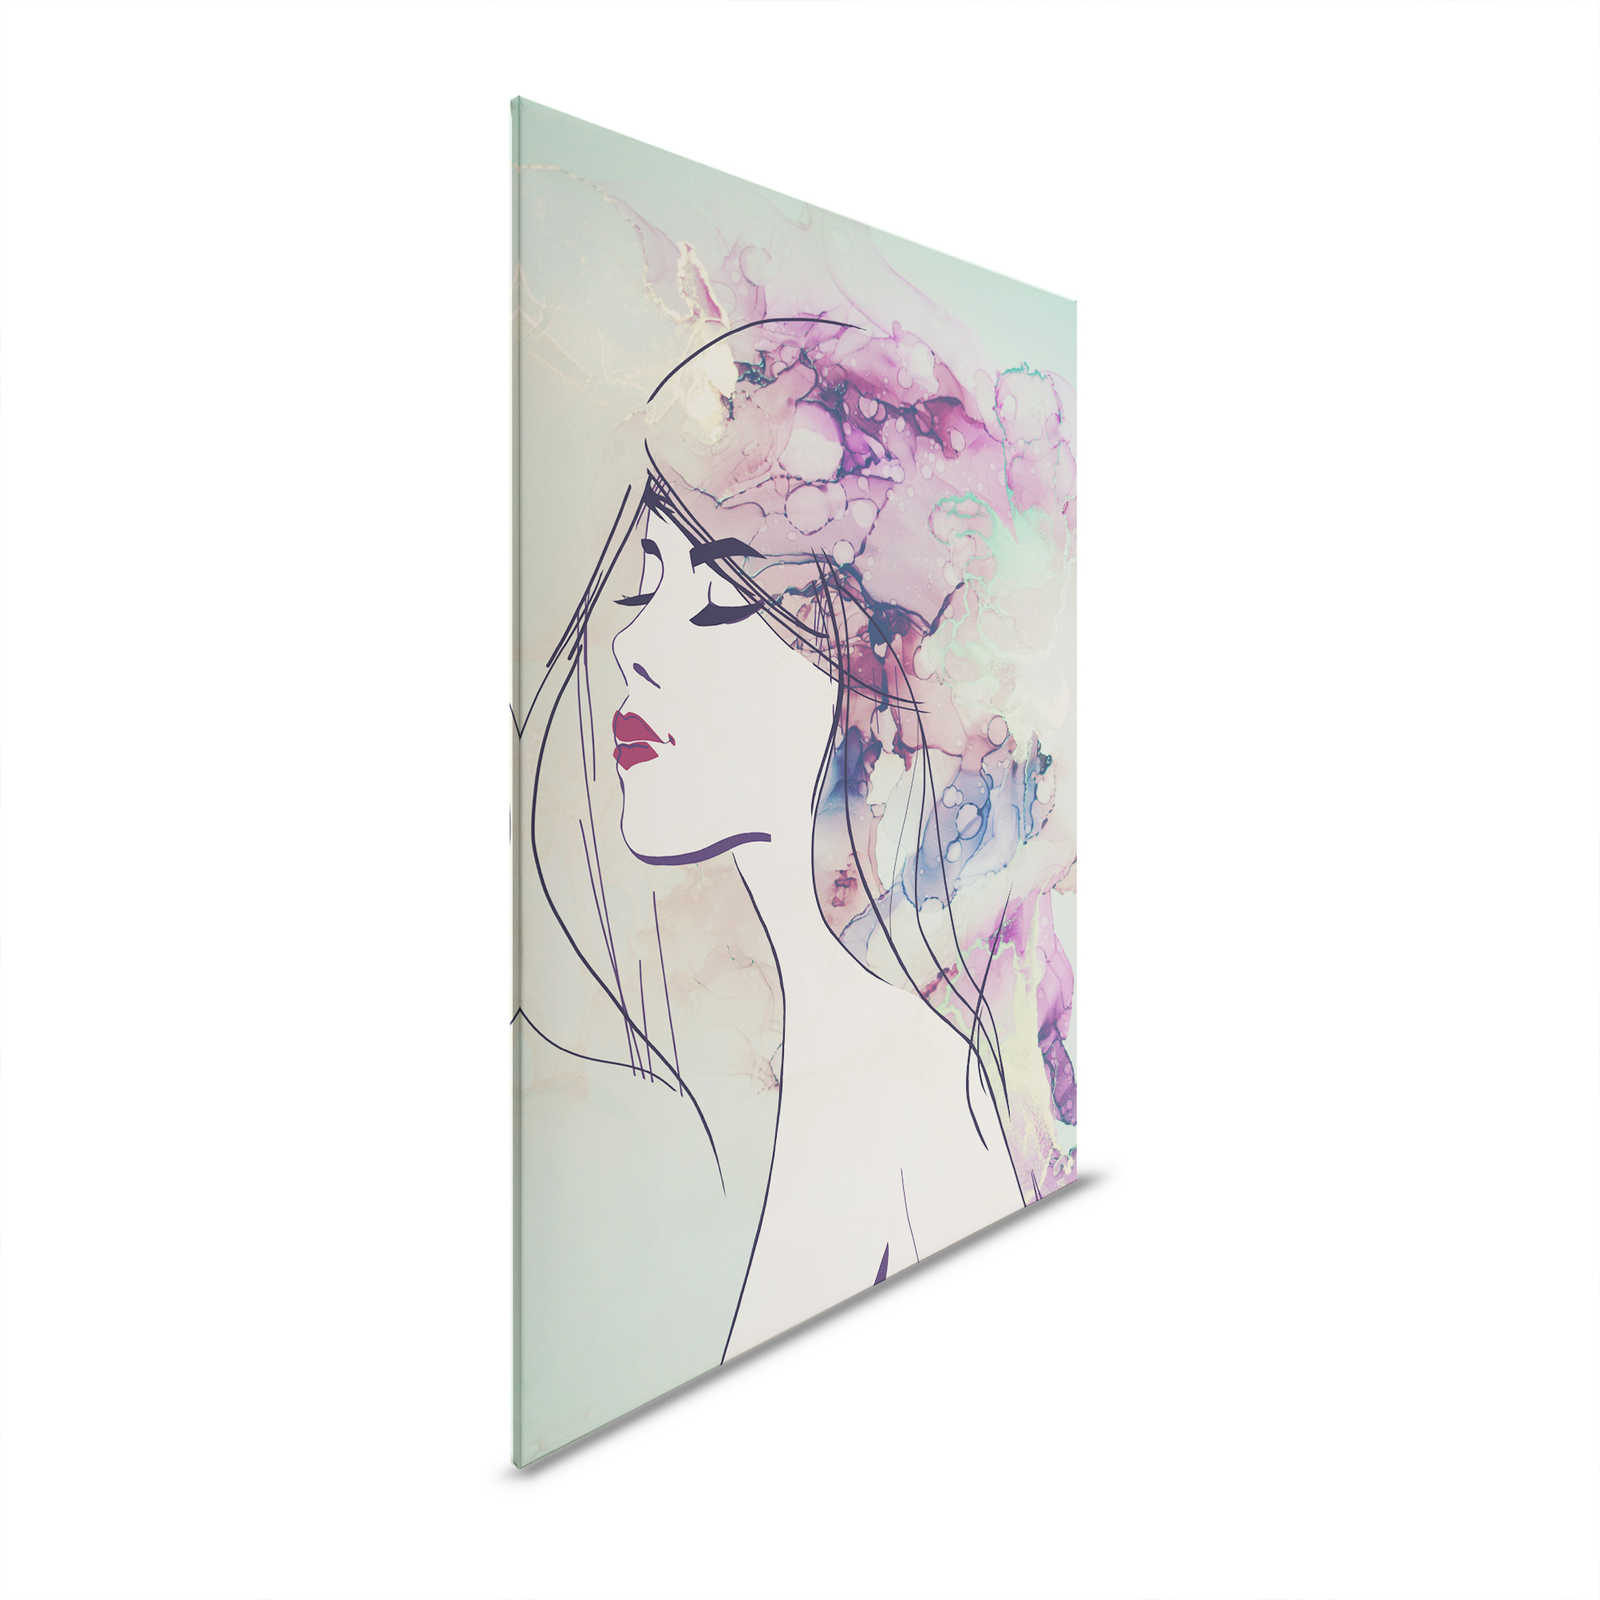 Toiles acryliques Style Visage de femme en turquoise & violet - 1,20 m x 0,80 m
